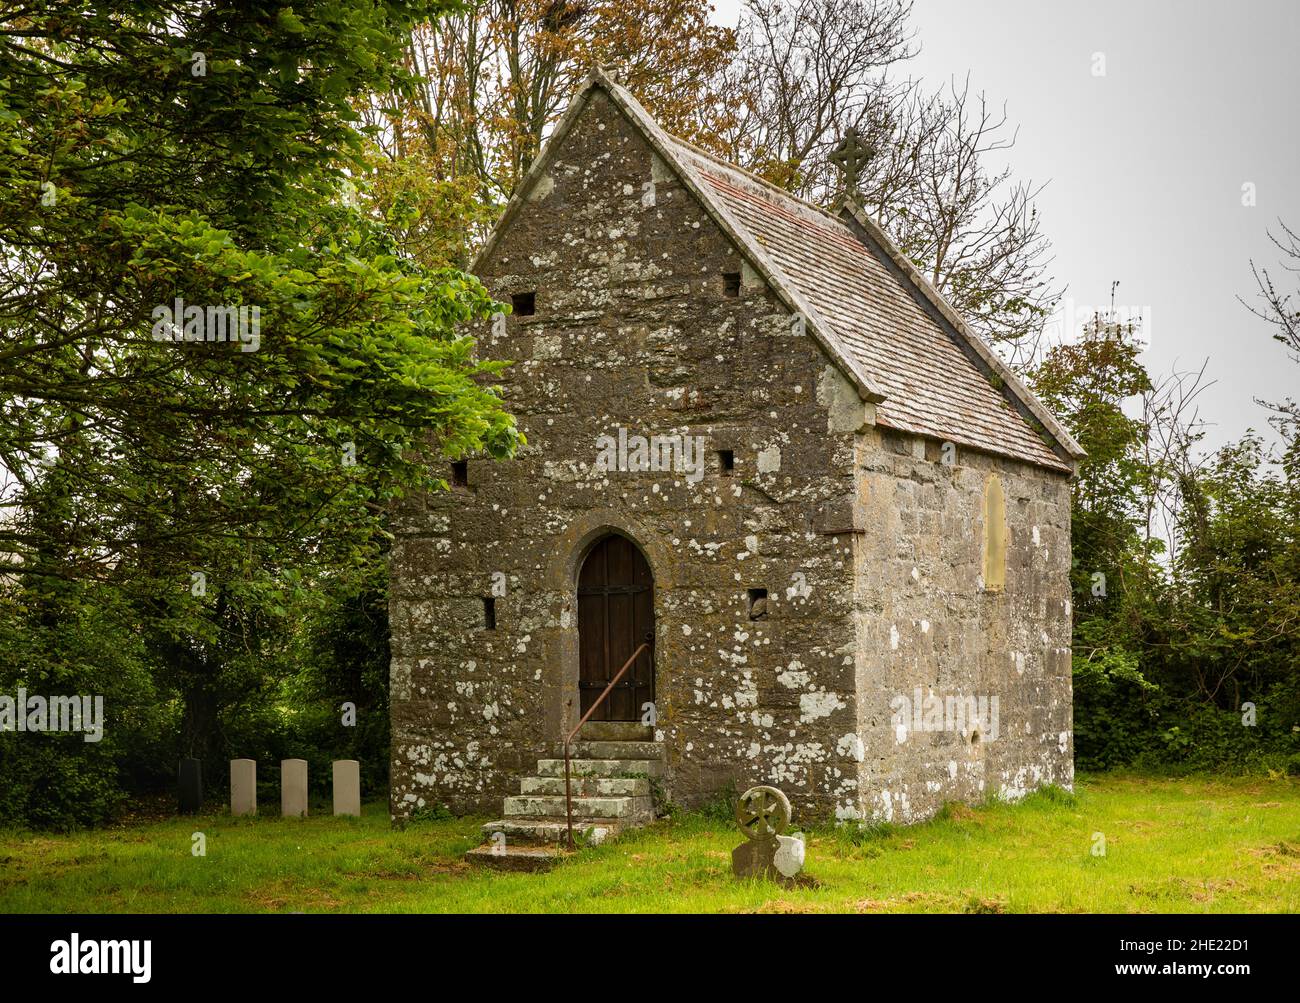 Pem167 Reino Unido, Gales, Pembrokeshire, Angle, cementerio de Santa María, Capilla de Sailor, antigua casa de marineros náufragos Foto de stock